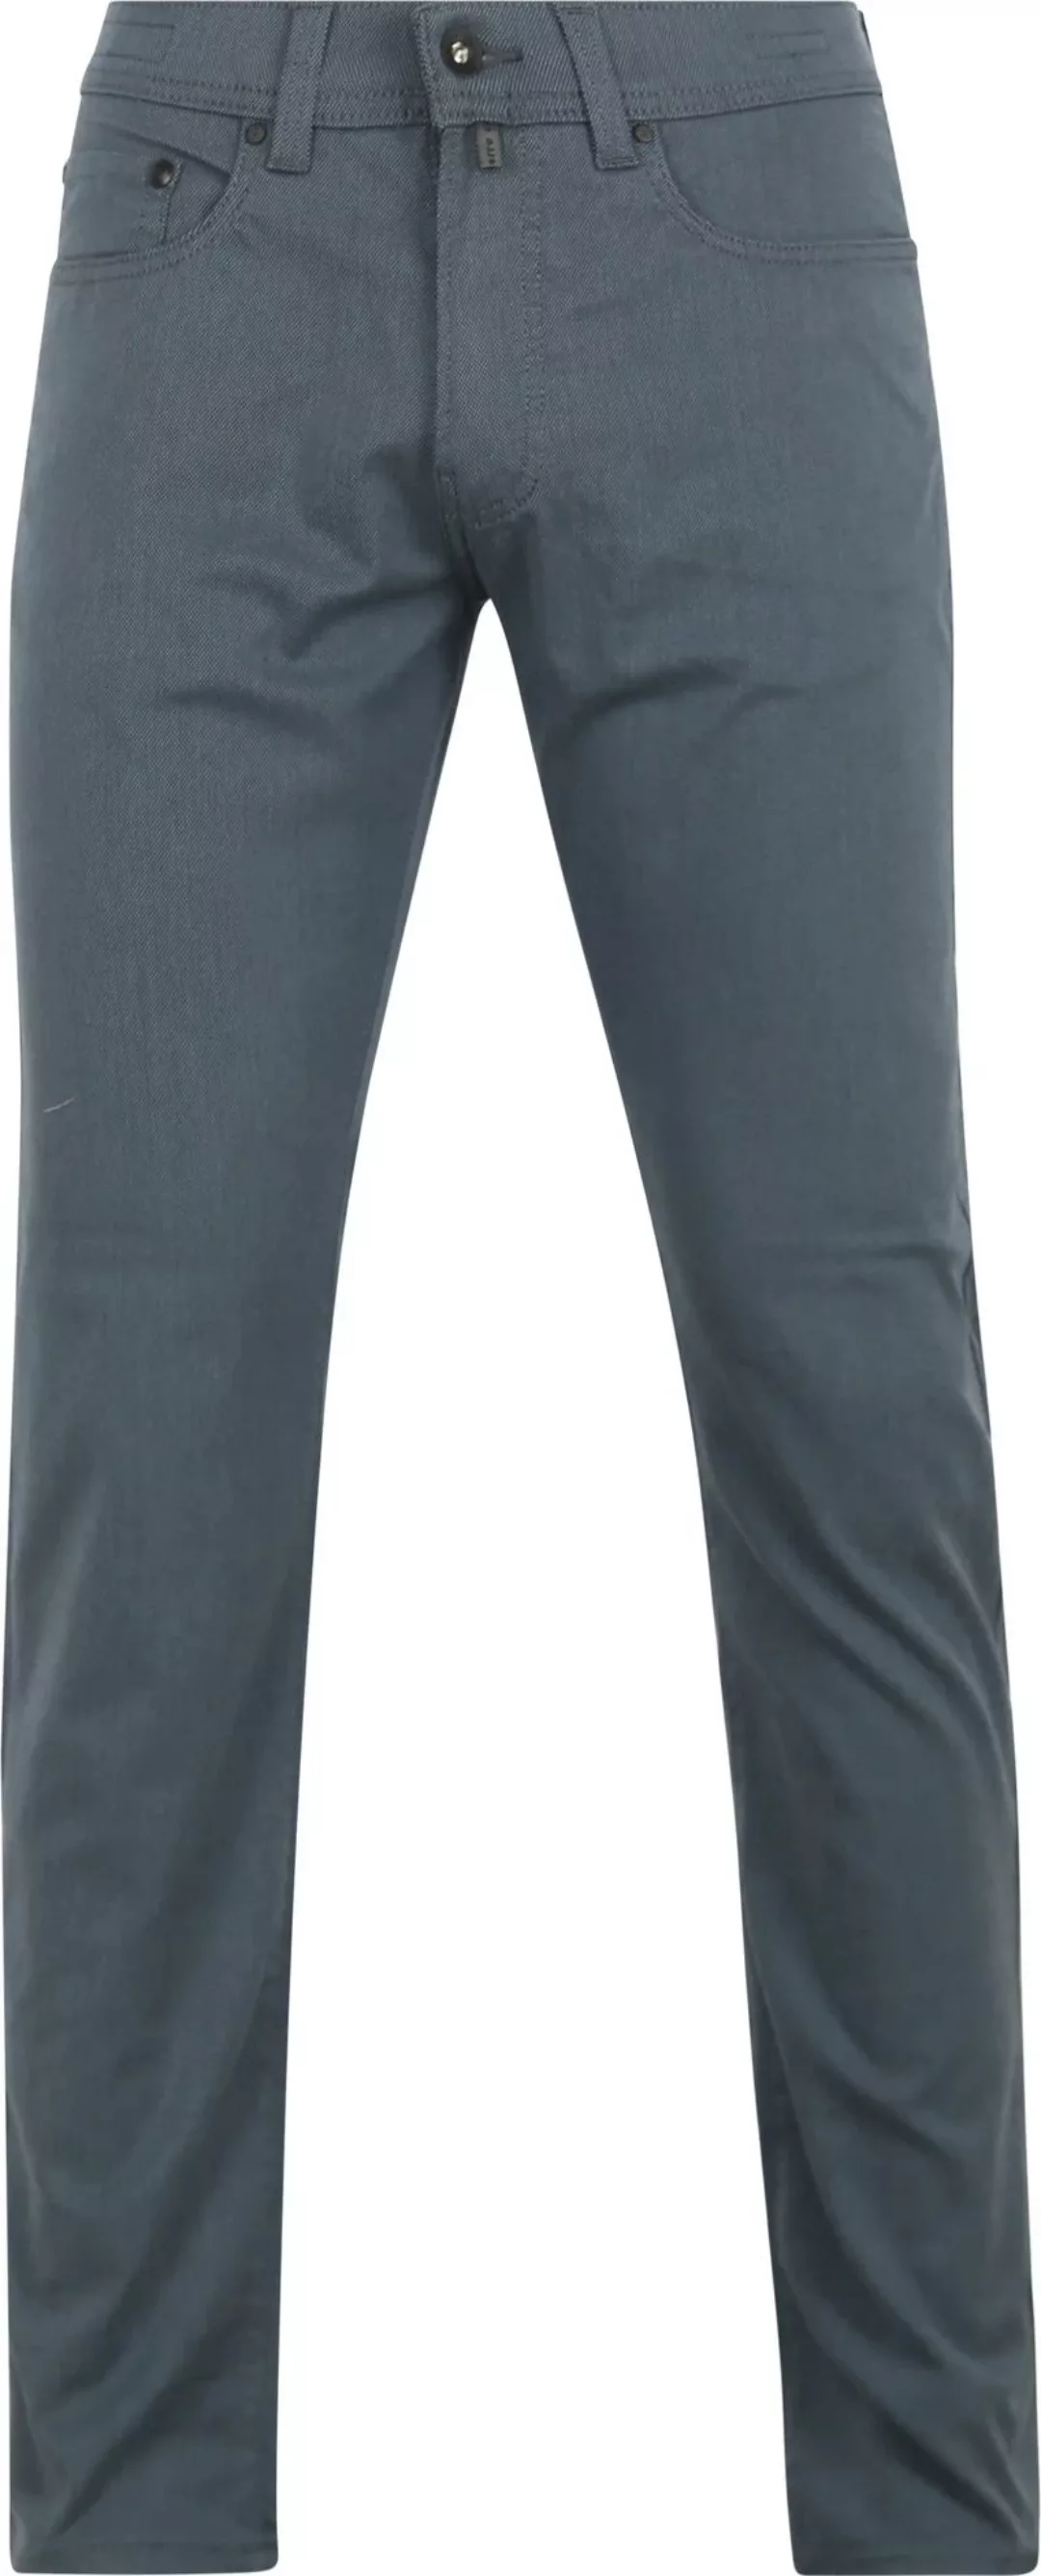 Pierre Cardin Trousers Lyon Tapered Ocean Blau - Größe W 38 - L 32 günstig online kaufen